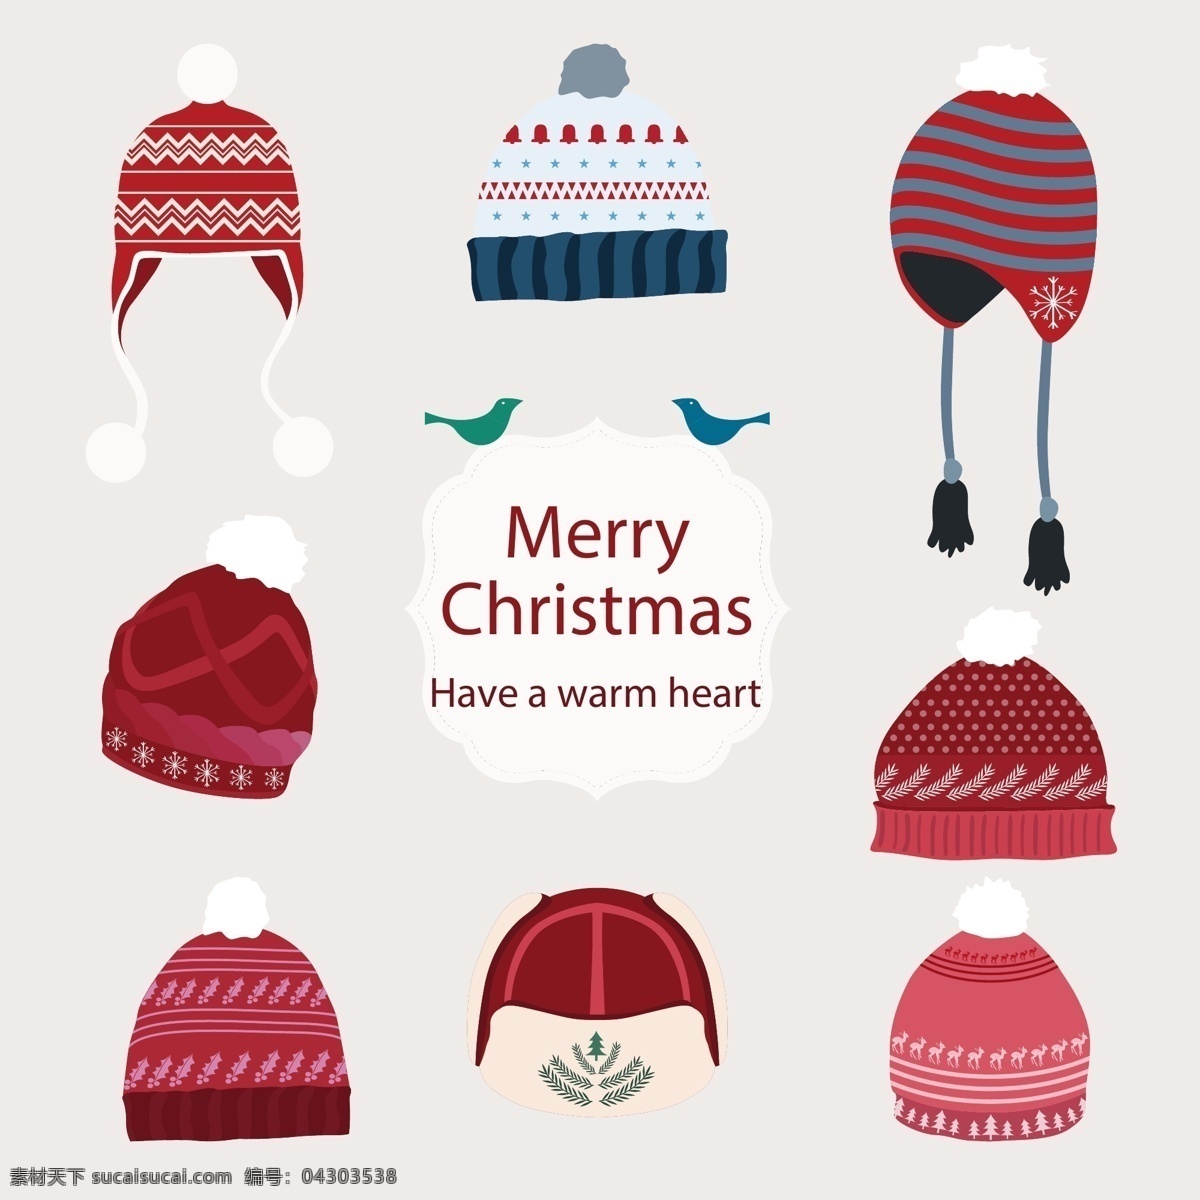 冬季帽子集合 圣诞帽子 帽子 毛线帽子 冬季帽子 厚帽子 冬季服饰 女式帽子 时尚帽子 时尚服饰 羊毛帽子 品牌帽子 保暖帽子 服装设计